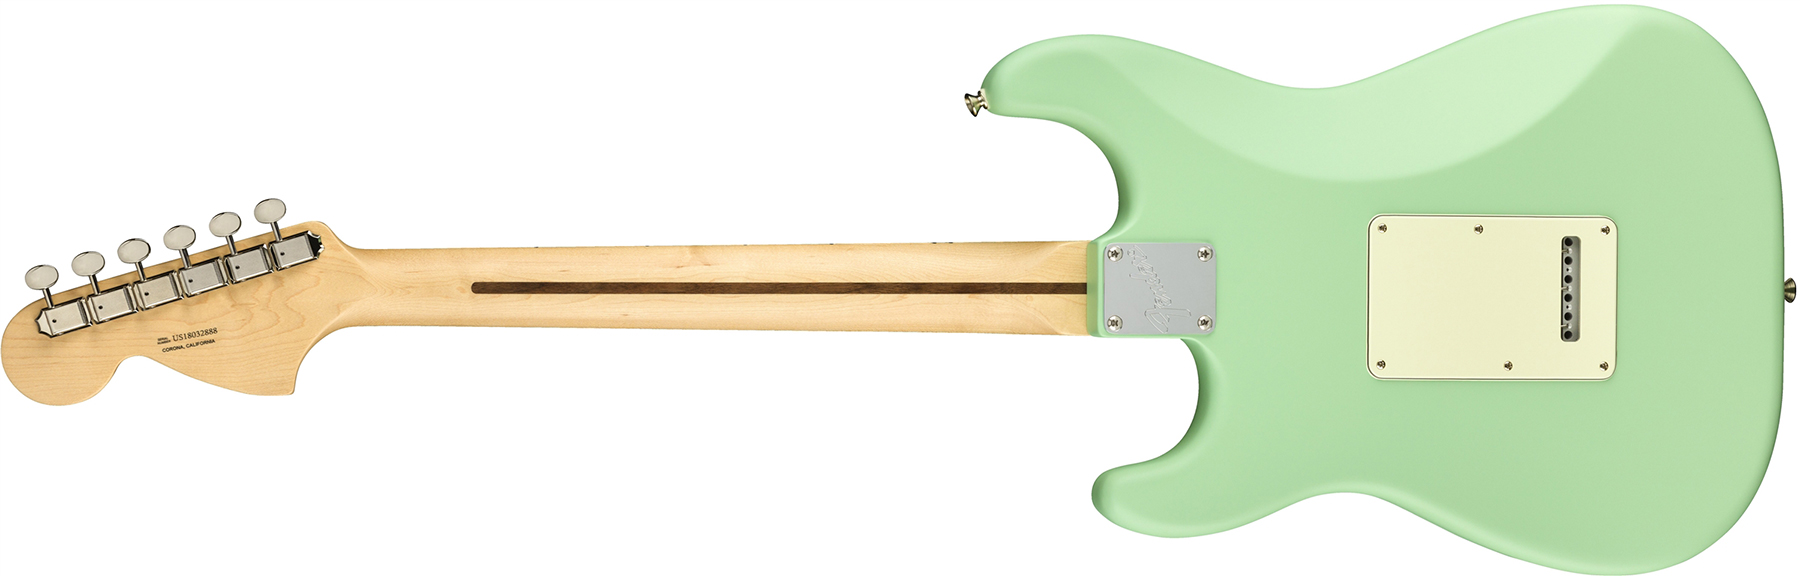 Fender Strat American Performer Usa Hss Mn - Satin Surf Green - Guitare Électrique Forme Str - Variation 1